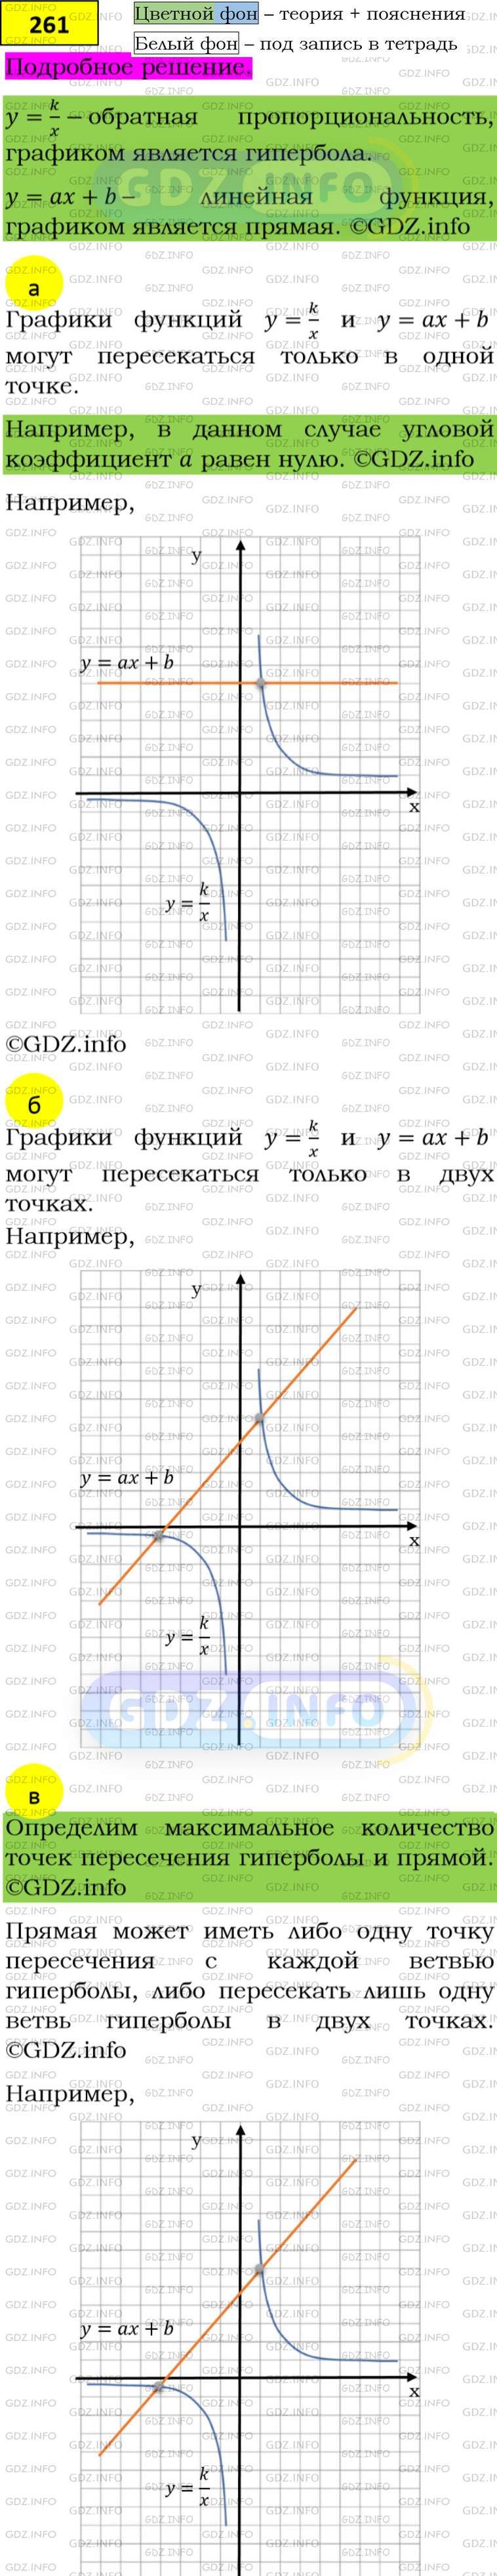 Фото подробного решения: Номер задания №261 из ГДЗ по Алгебре 8 класс: Макарычев Ю.Н.